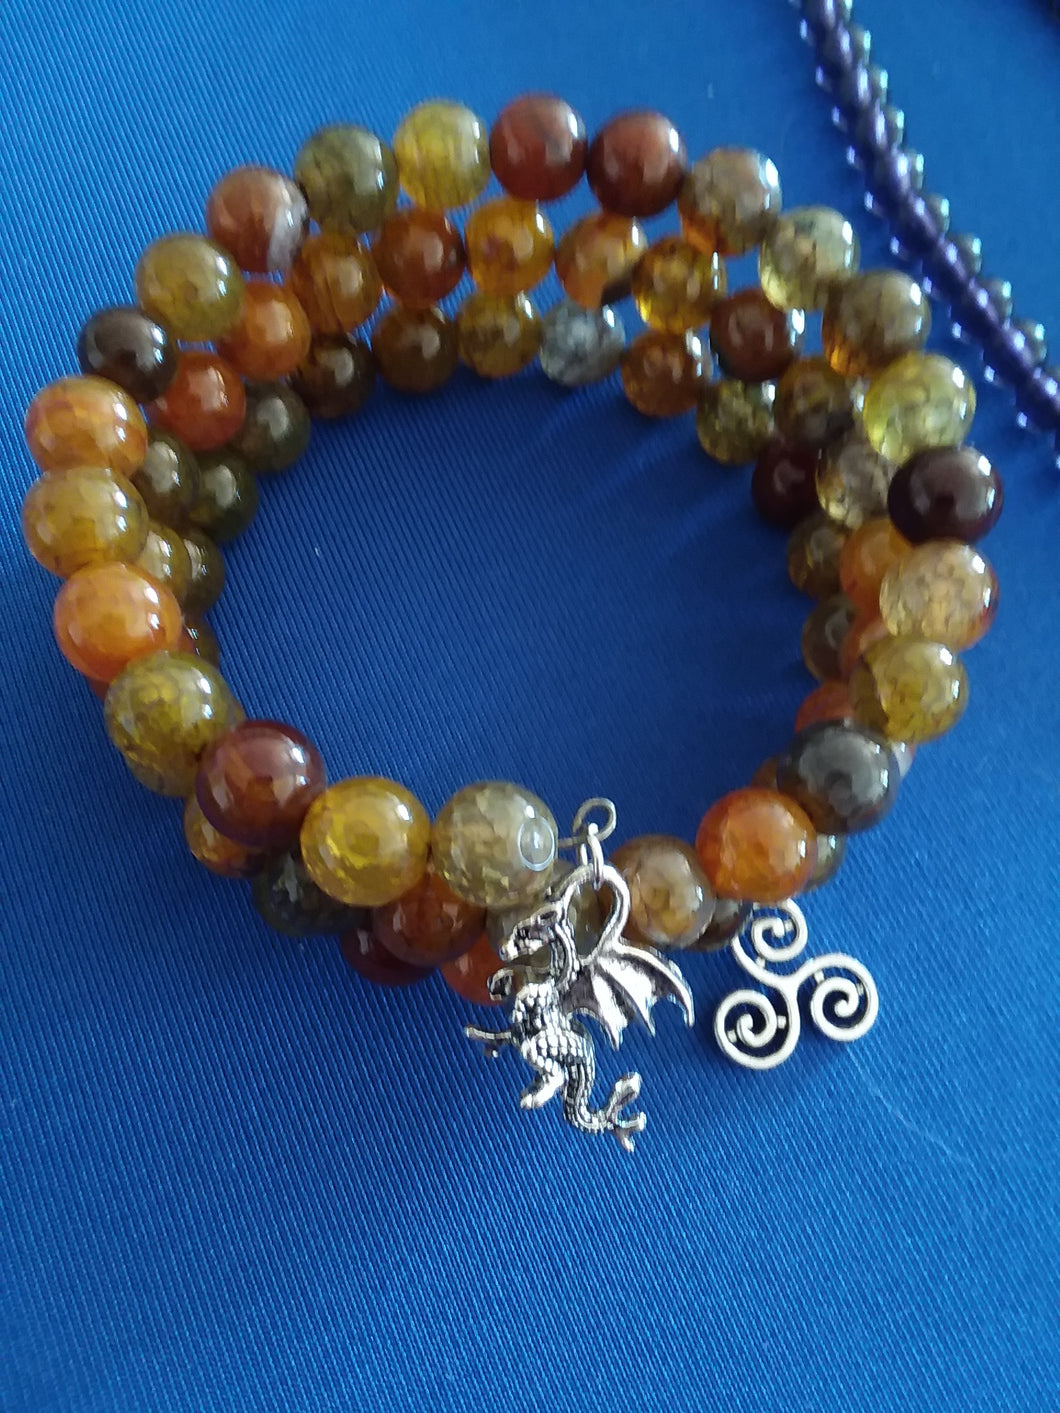 AVBeads Gemstone Beaded Charm Bracelet Wicca Pagan Jewelry 3Layer Wrap Bracelet Dragon